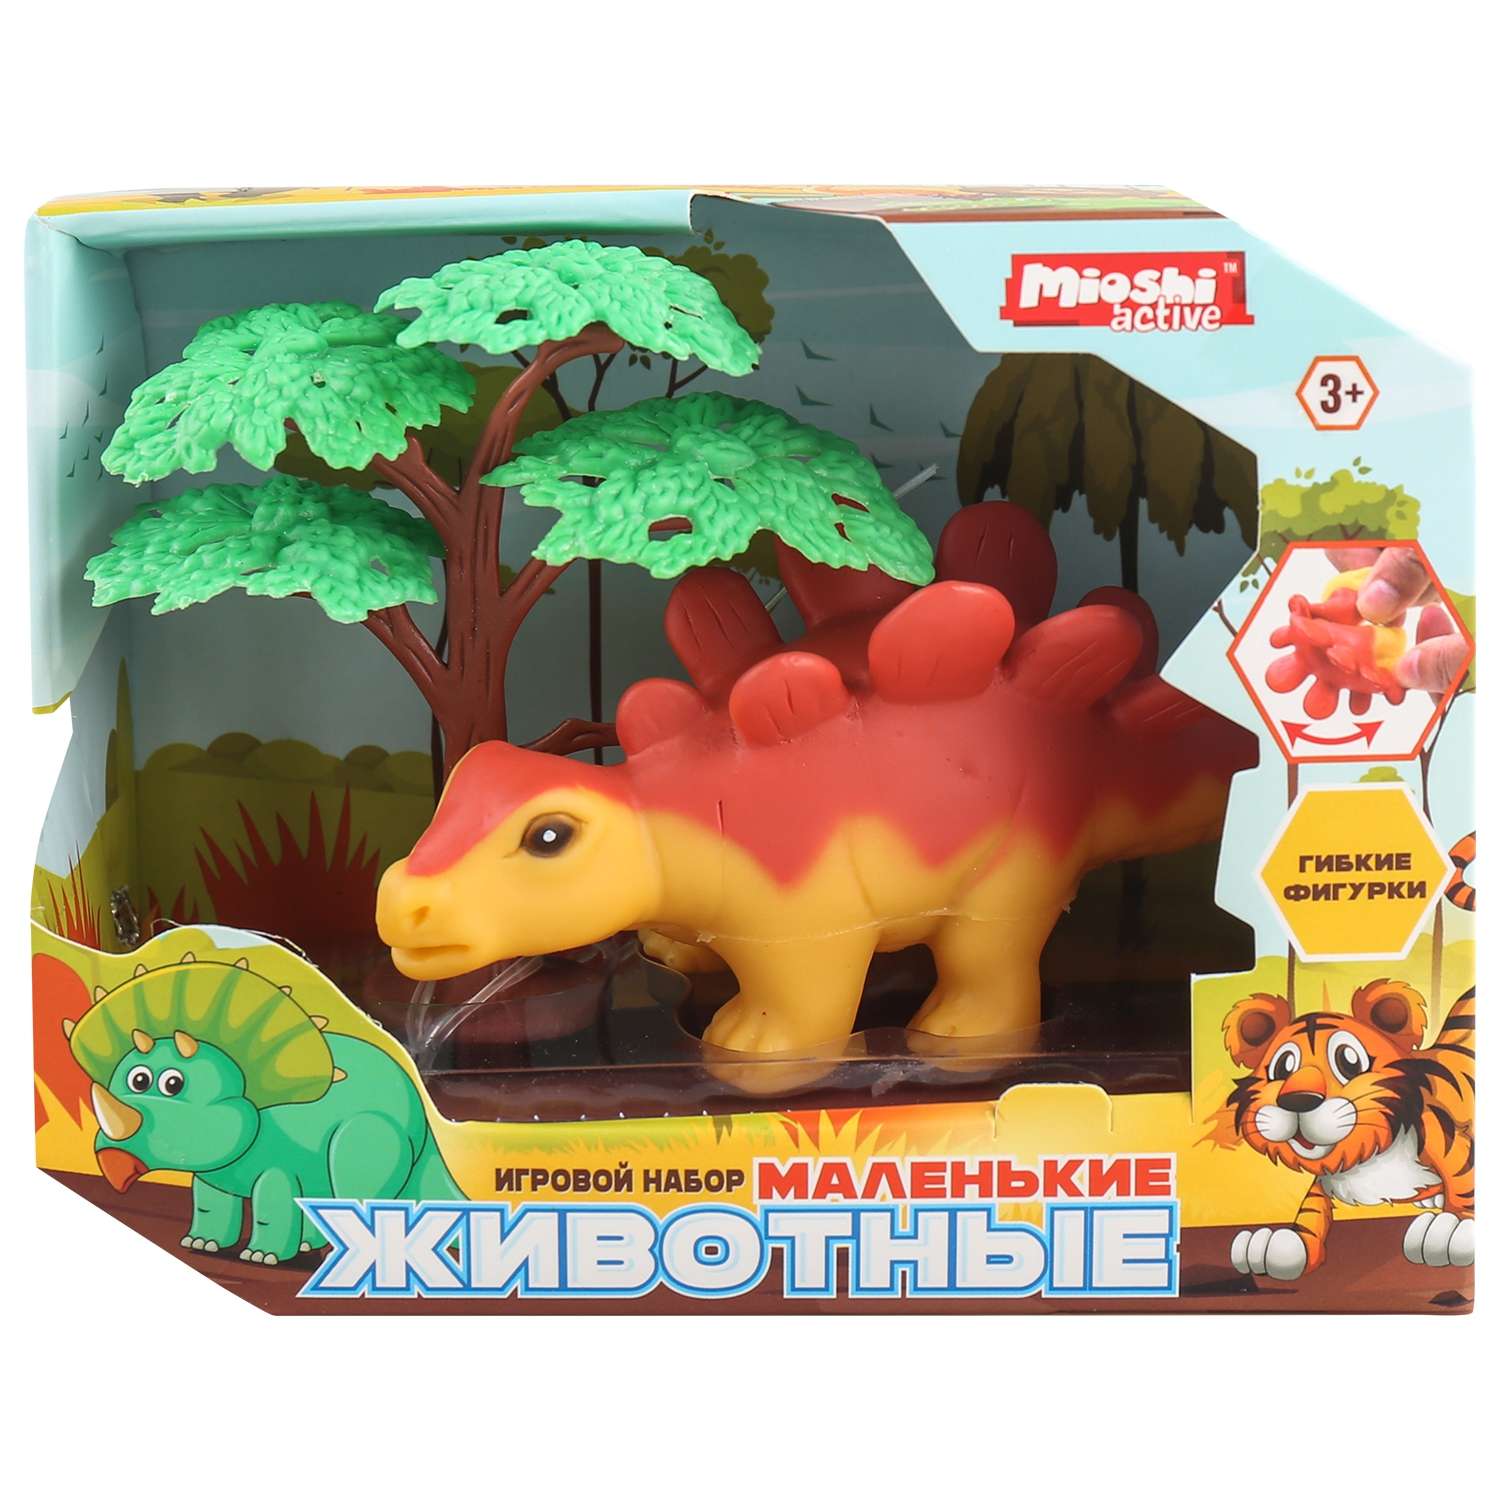 Игровой набор Mioshi Маленькие звери: Стегозавр 12х6 см - фото 1